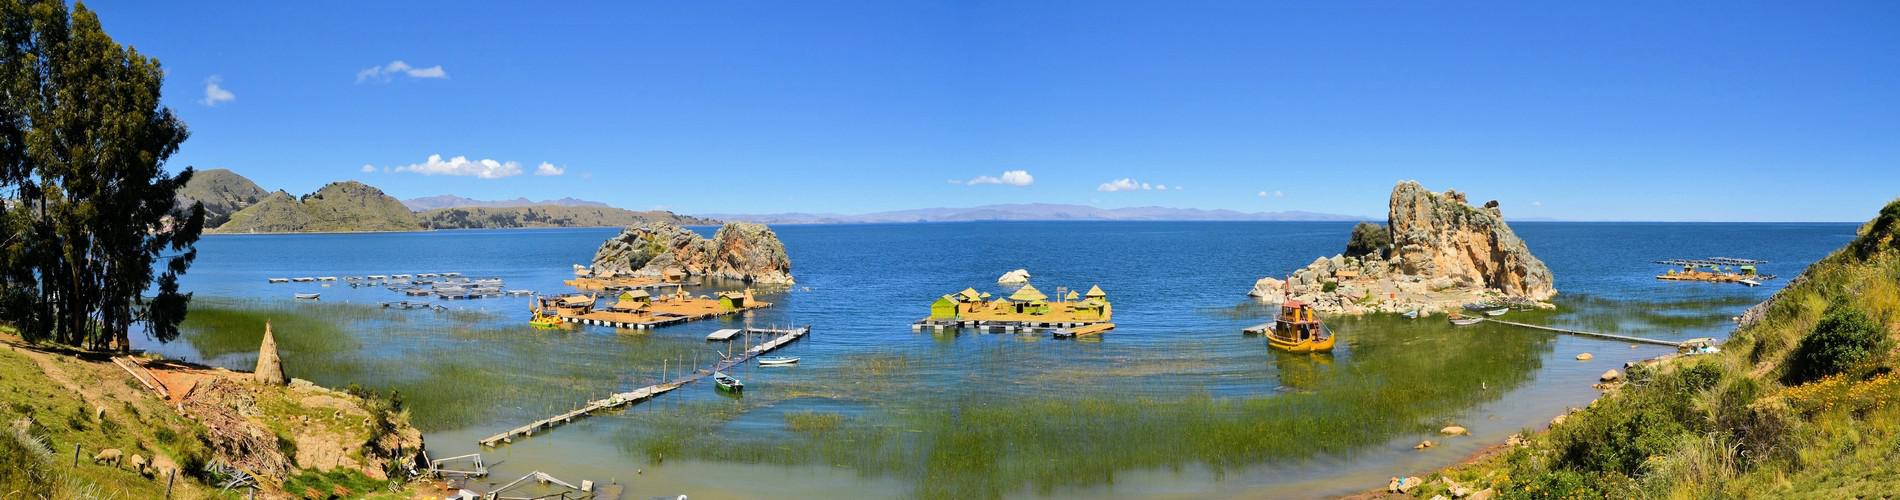 The Sun Island, La Paz and Uyuni Tour